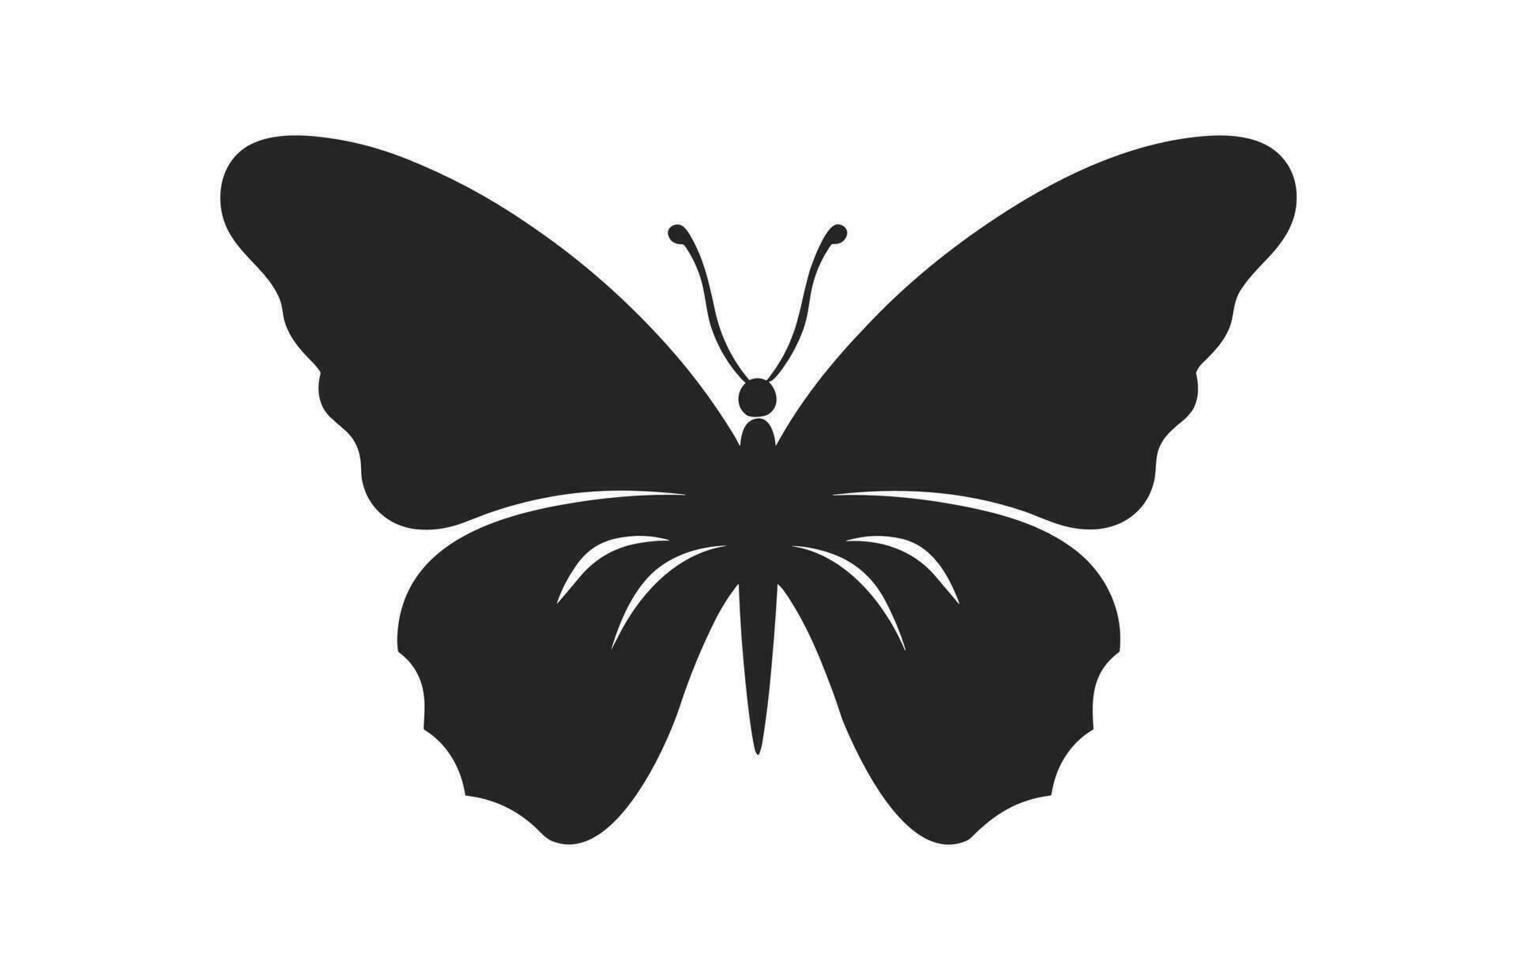 ein schön Schmetterling Silhouette isoliert auf ein Weiß Hintergrund, ein Monarch Schmetterling Vektor